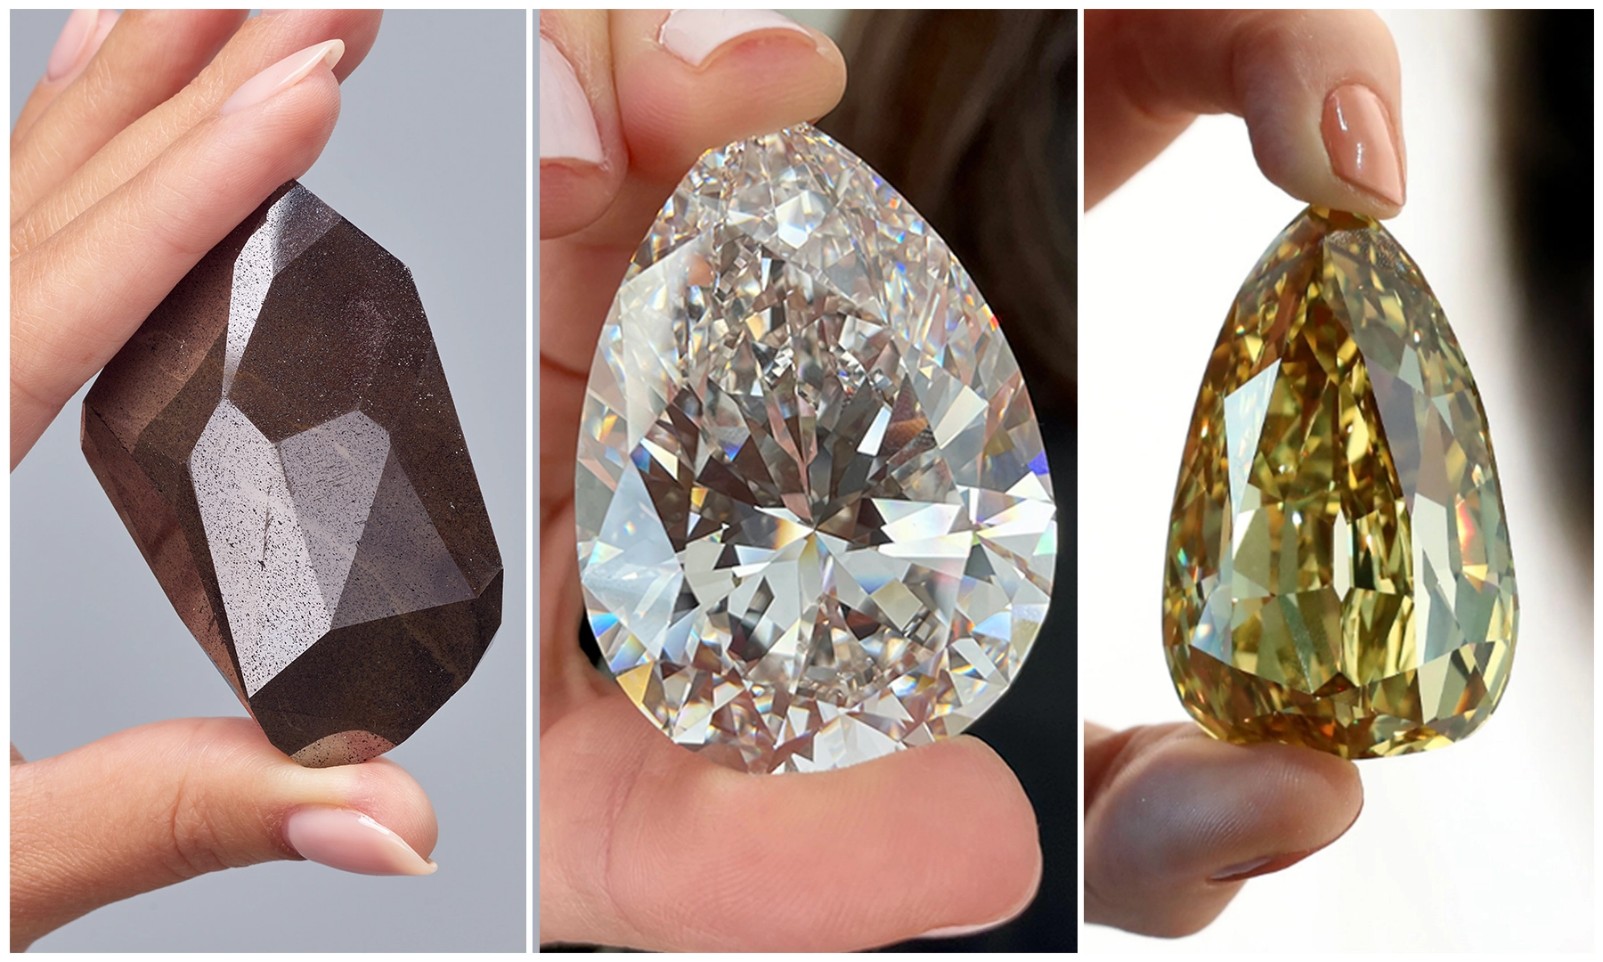 Kim cương, loại đá quý khan hiếm nhất trong tự nhiên, trải qua quá trình “chịu nhiệt” vô cùng lớn để trở thành những viên kim cương tinh túy hấp thụ khí lộc đất trời